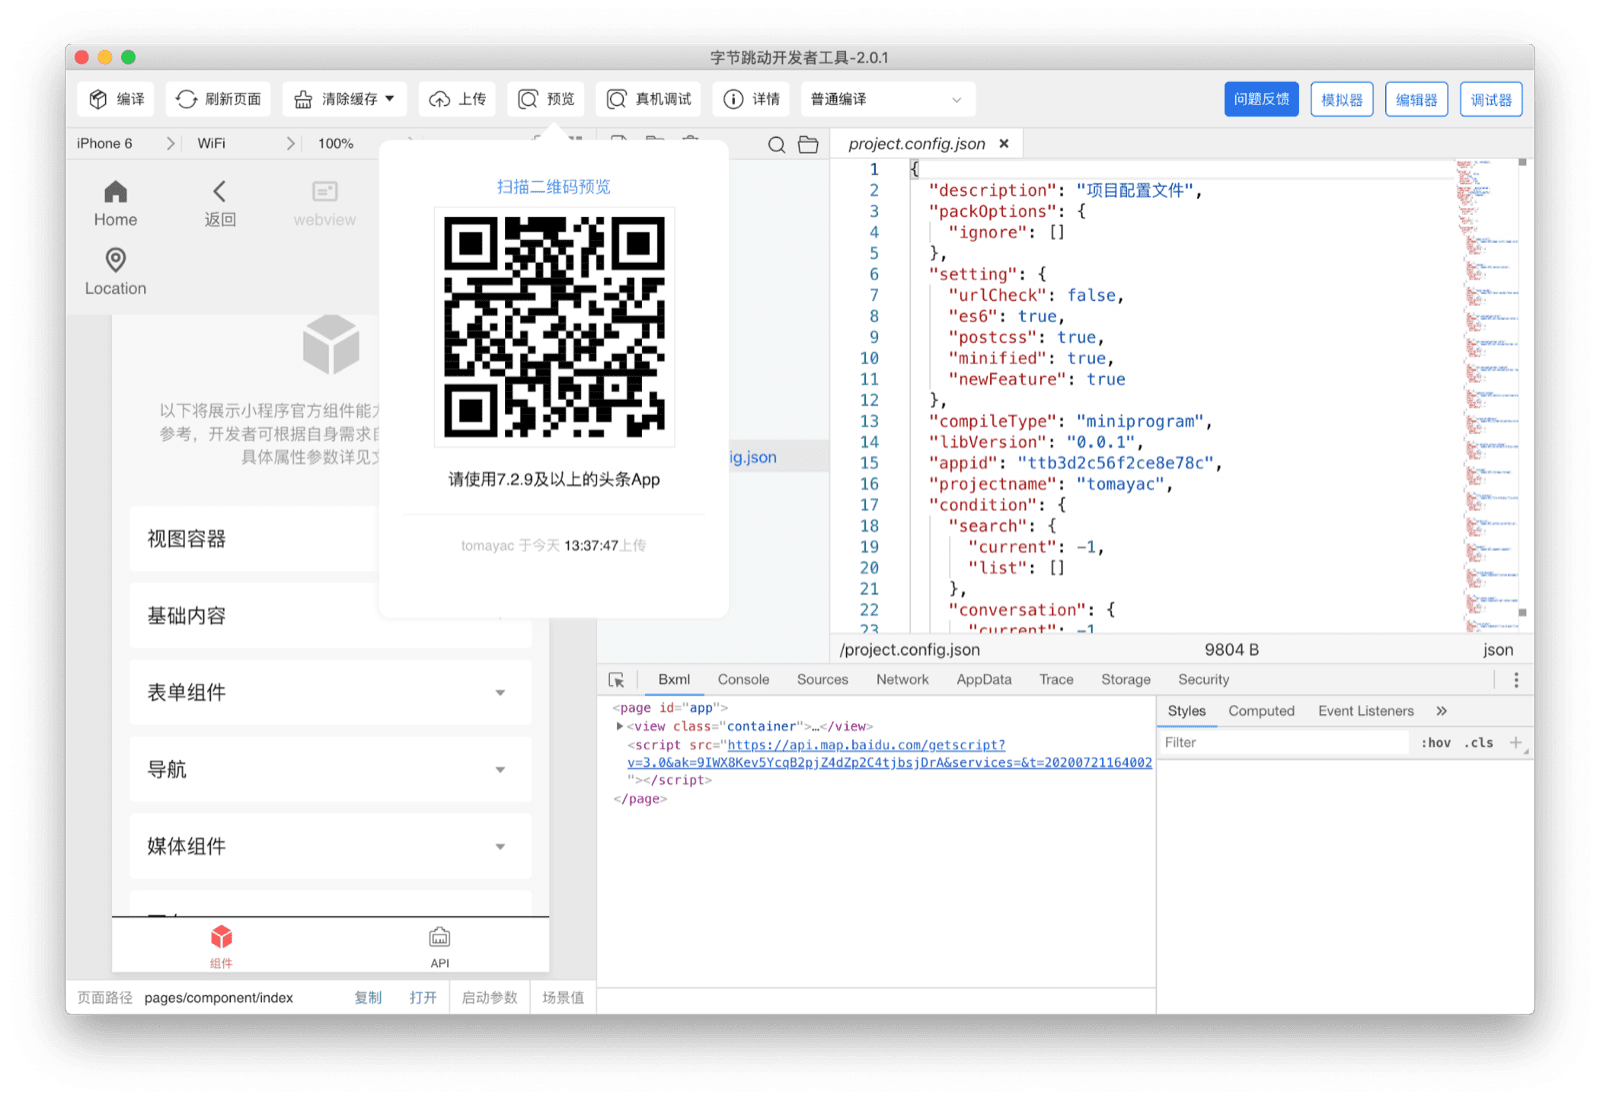 ByteDance DevTools एक क्यूआर कोड दिखा रहा है. उपयोगकर्ता इस क्यूआर कोड को Douyin ऐप्लिकेशन से स्कैन करके, अपने डिवाइस पर मौजूदा मिनी ऐप्लिकेशन देख सकते हैं.